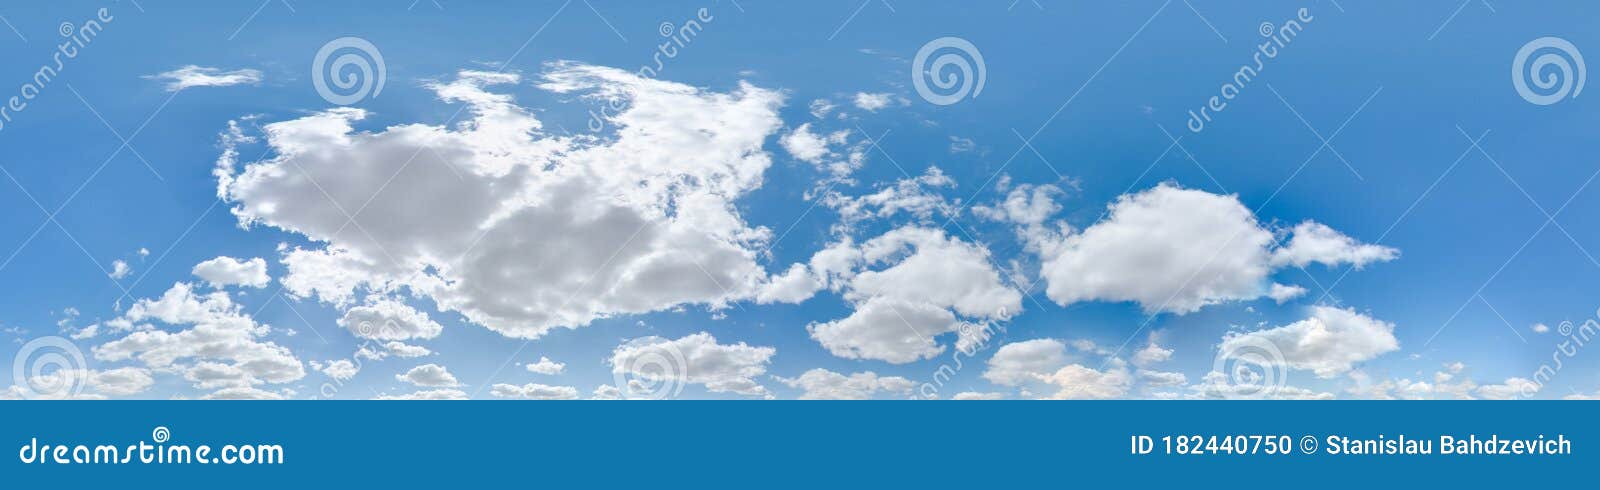 Đây là hình ảnh Trời với Mây và Mặt trời 360 độ. Hình ảnh với Phong Cảnh Quả Cầu 3D, hứa hẹn sẽ mang đến cho bạn một trải nghiệm hoàn toàn mới lạ và đầy ấn tượng.